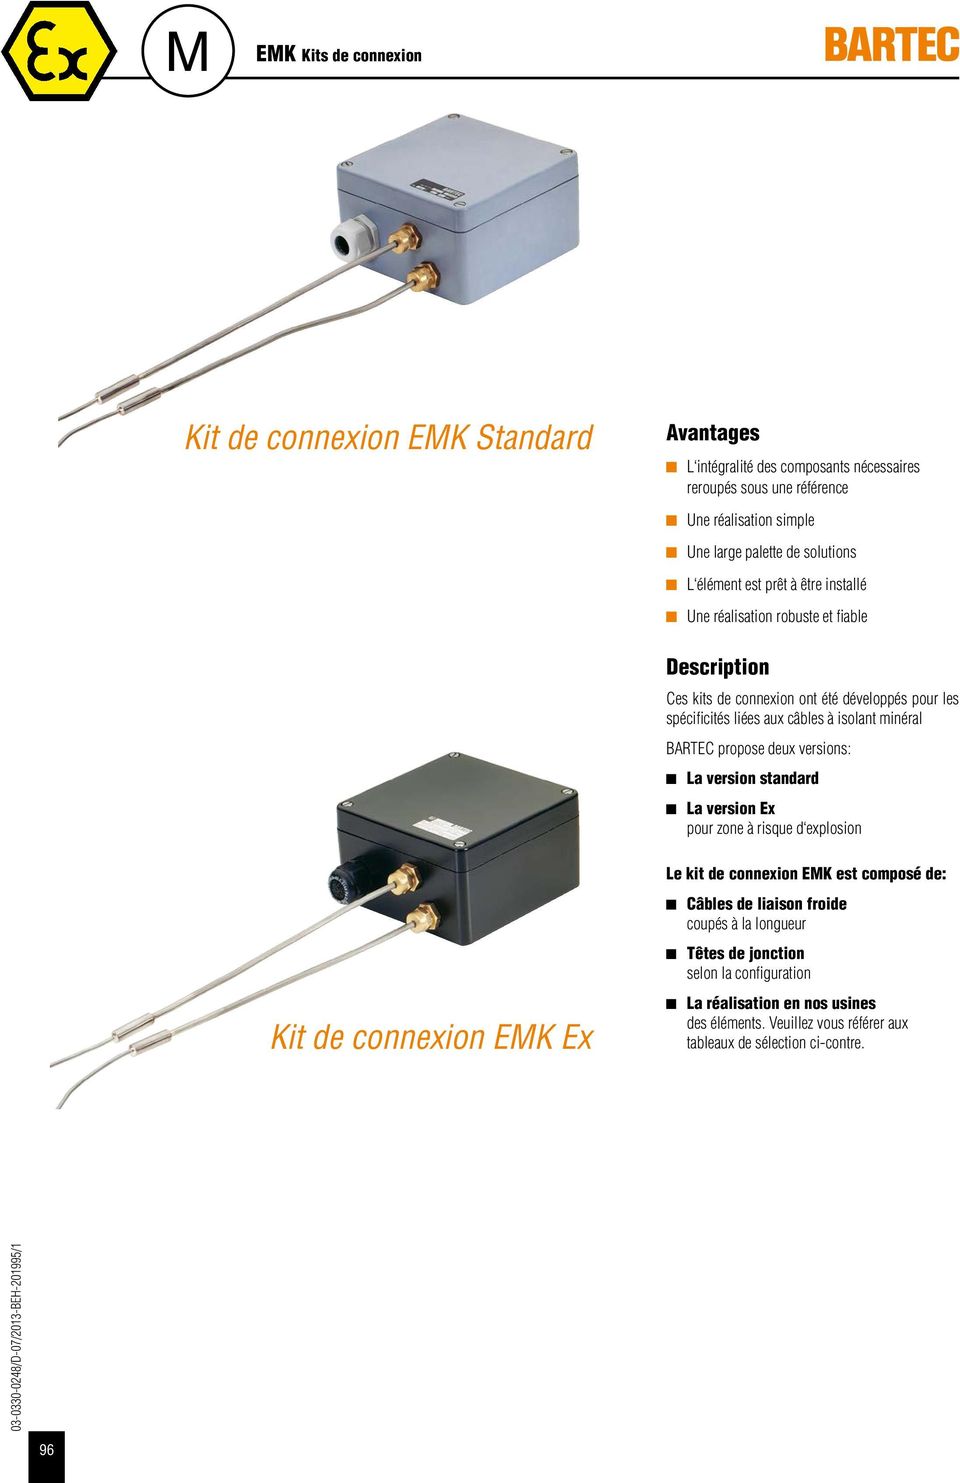 BARTEC propose deux versions: La version standard La version Ex pour zone à risque d explosion Kit de connexion EMK Ex Le kit de connexion EMK est composé de: Câbles de liaison froide